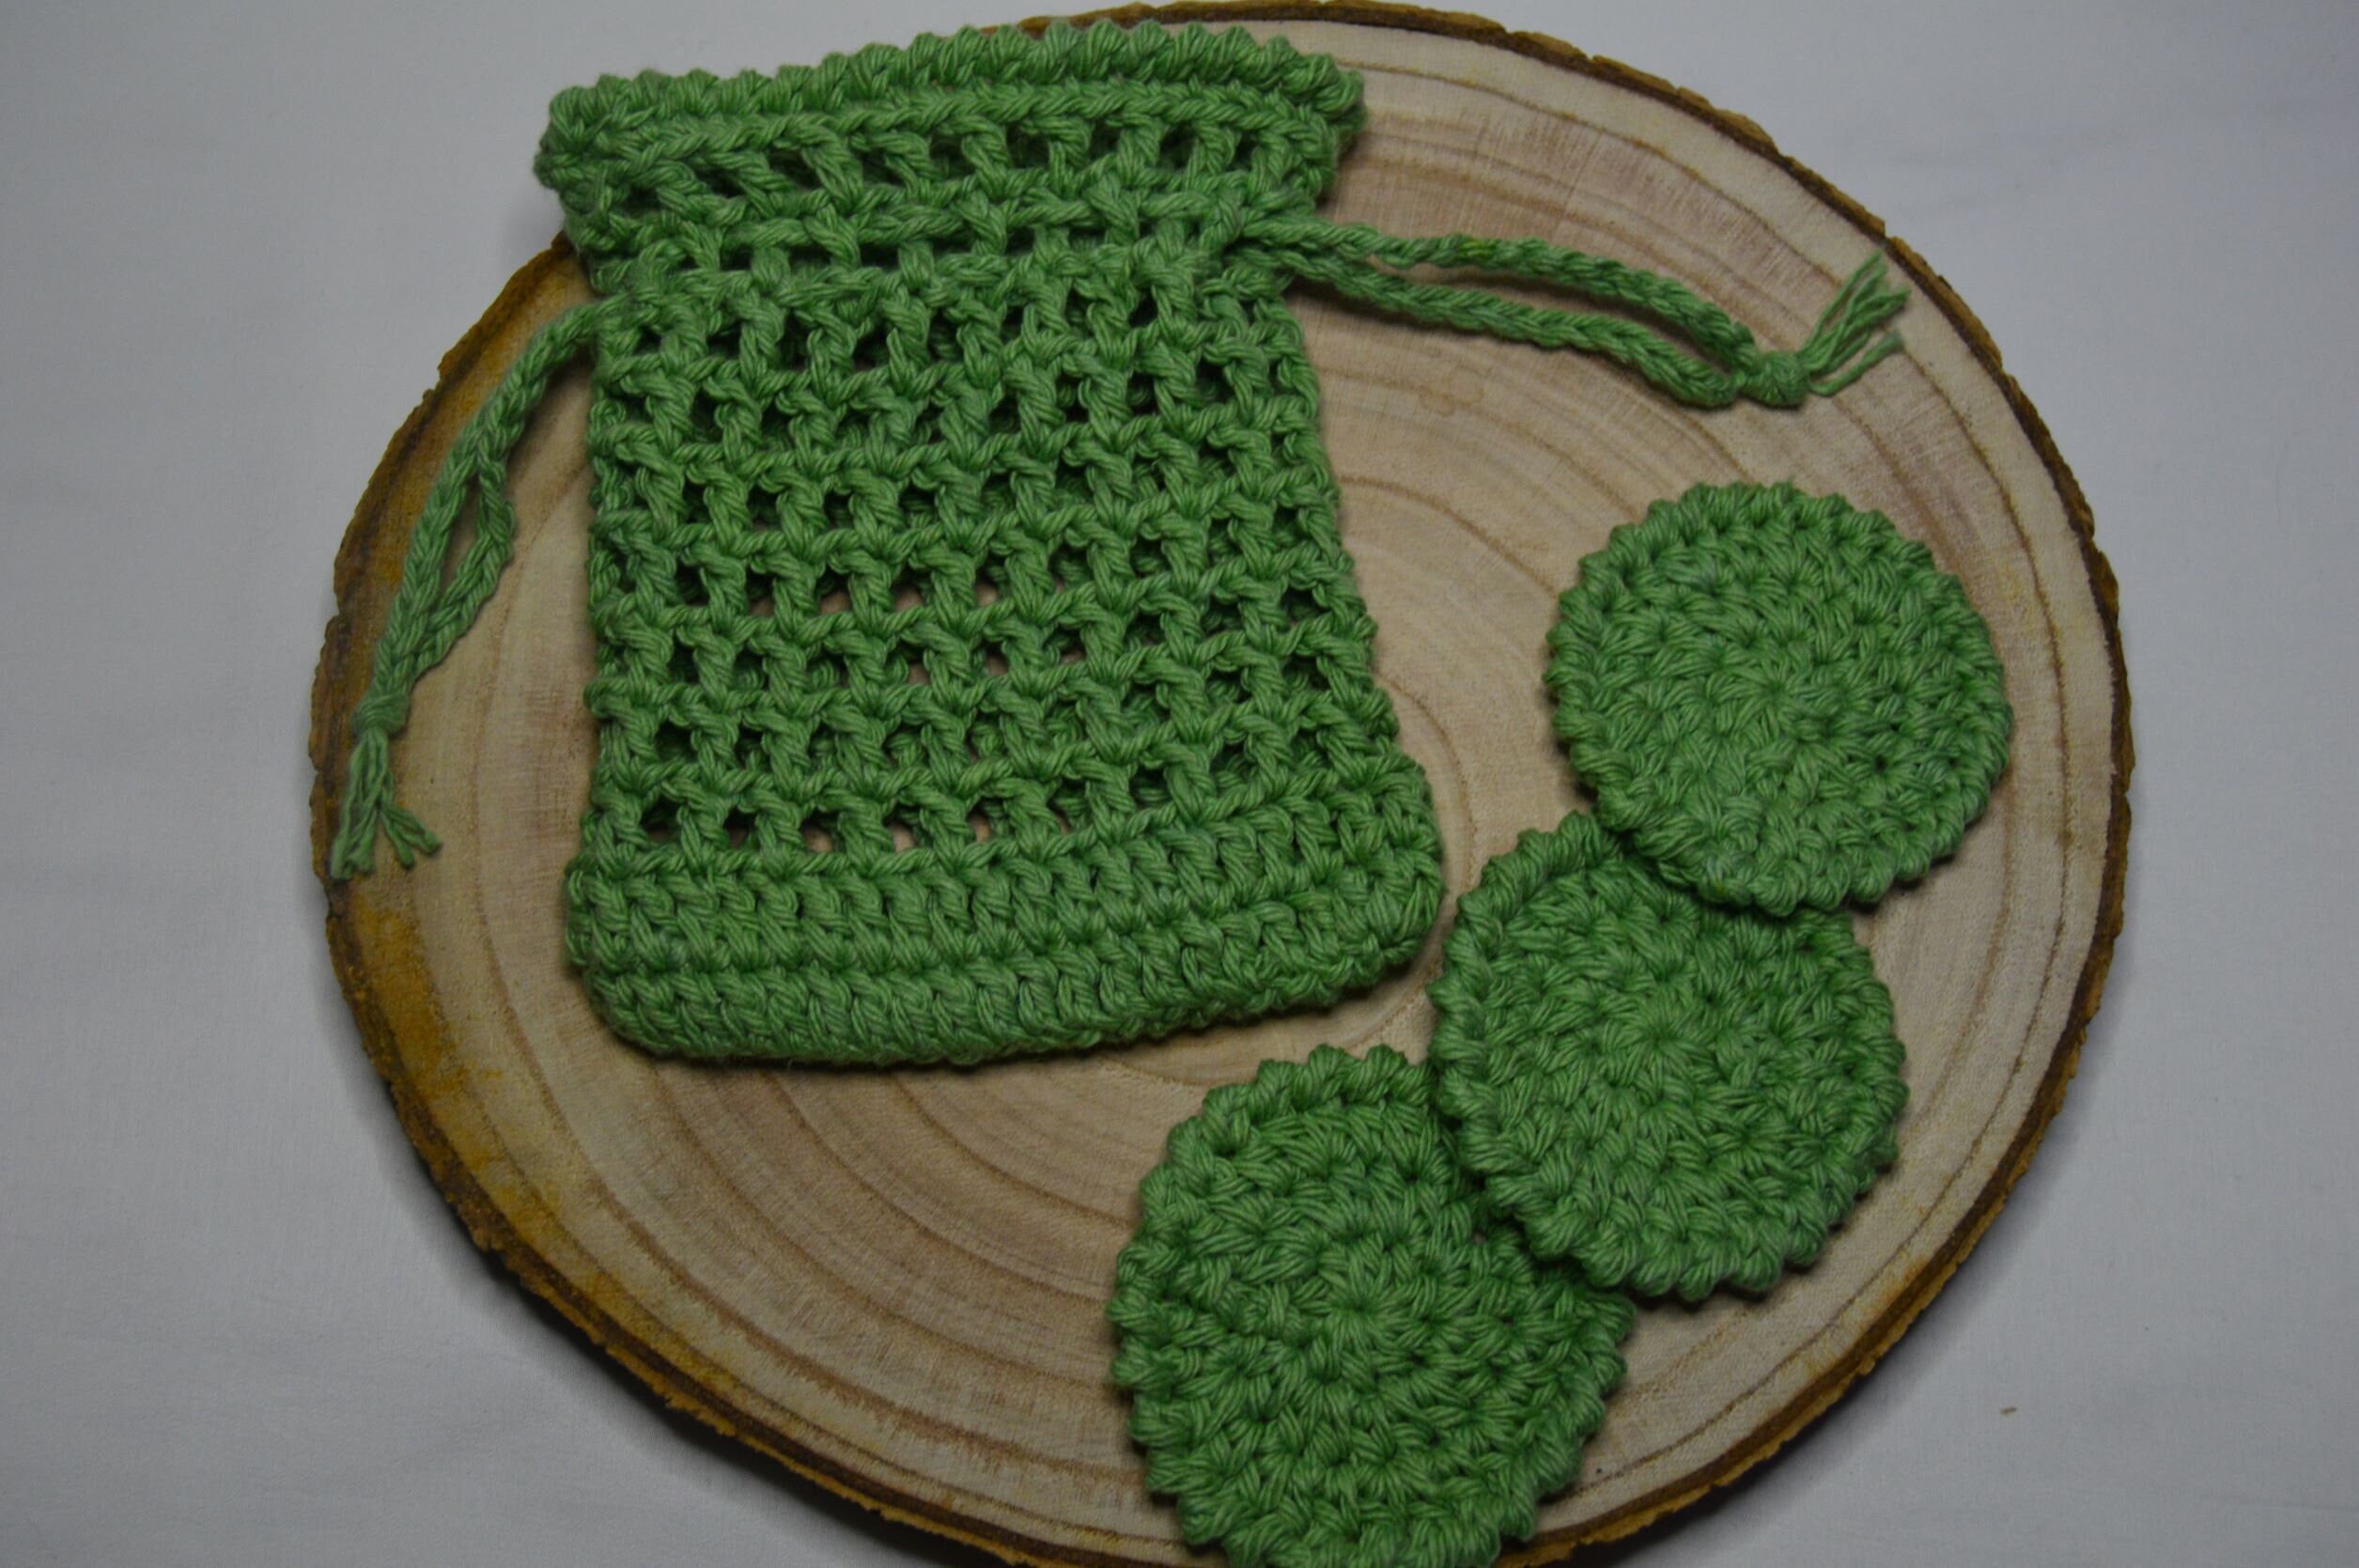 Bamboo Crochet Hooks / Pony Bamboo Crochet Hook Set / Gift for Crocheter /  Eco-friendly Crochet Gift Crochet Needles Plastic-free Crocheting 